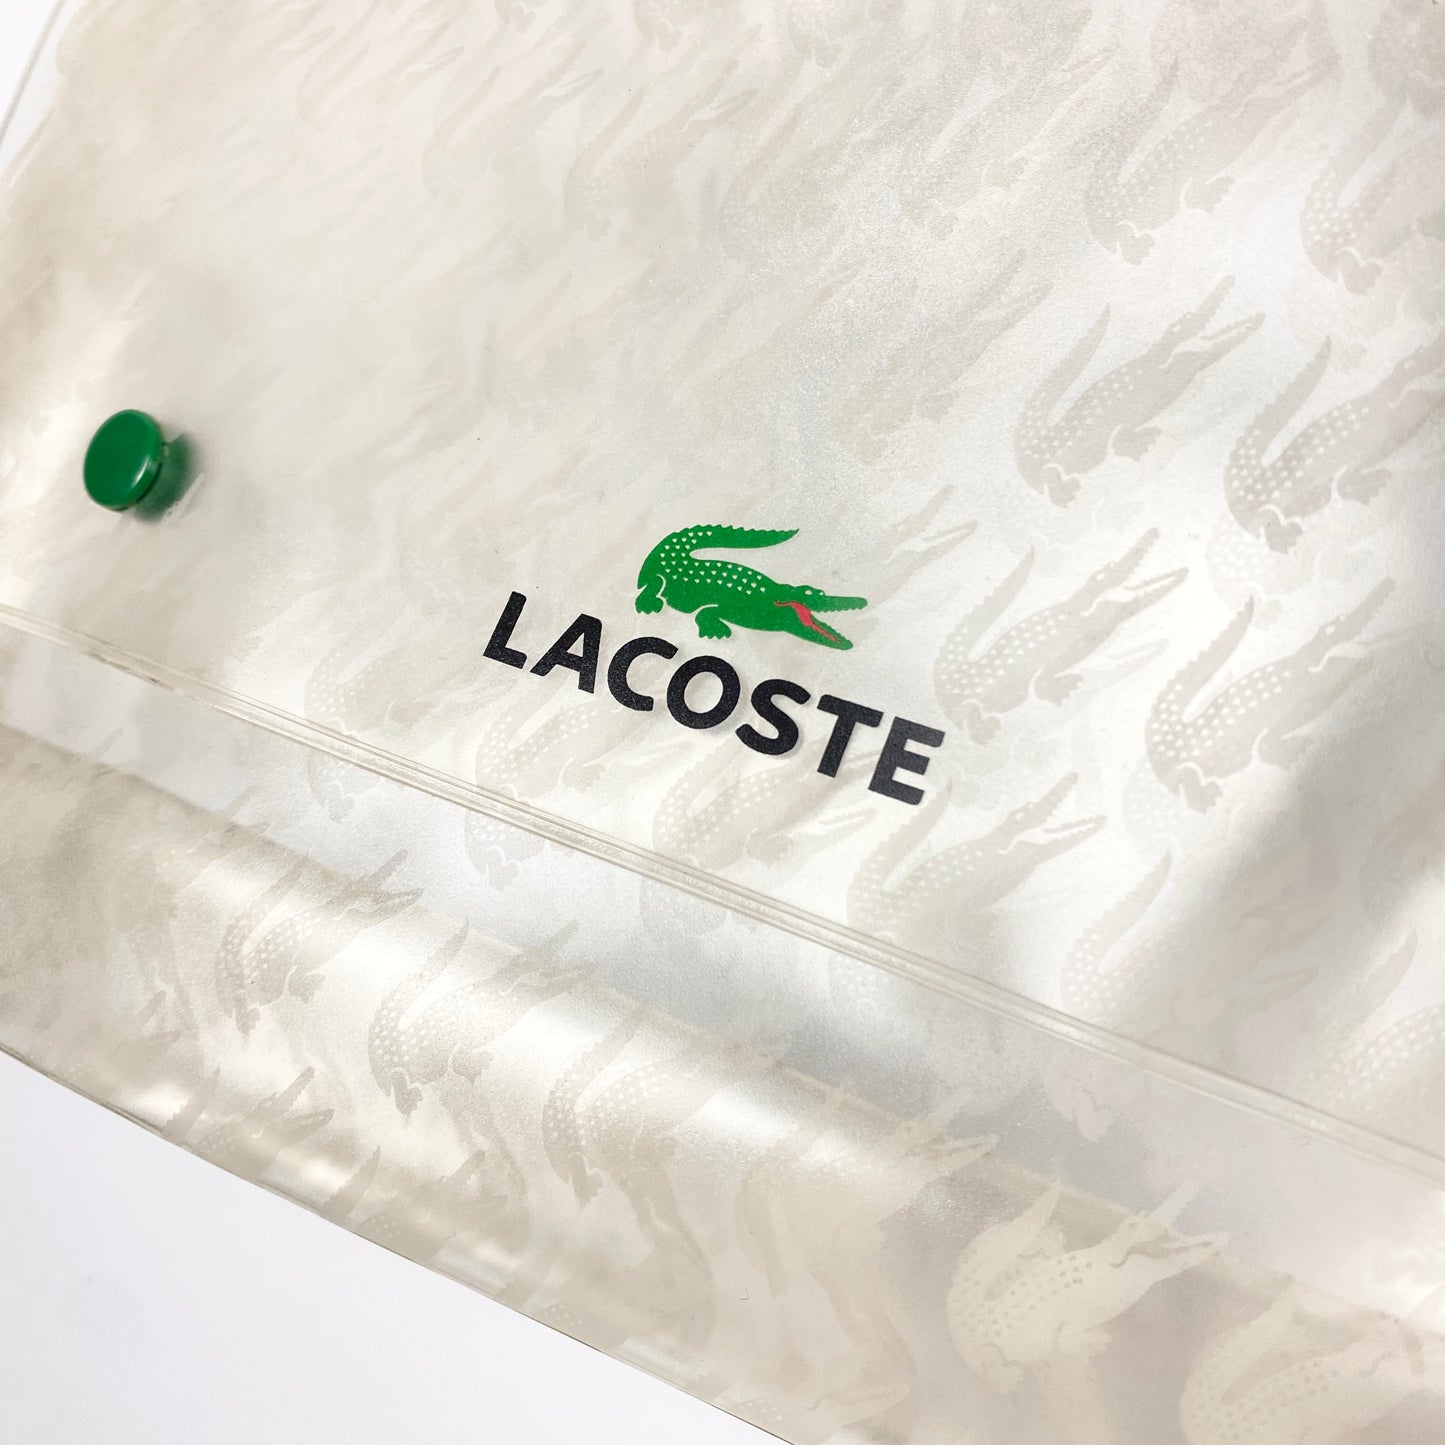 LACOSTE Plastic Pouch / Beutel